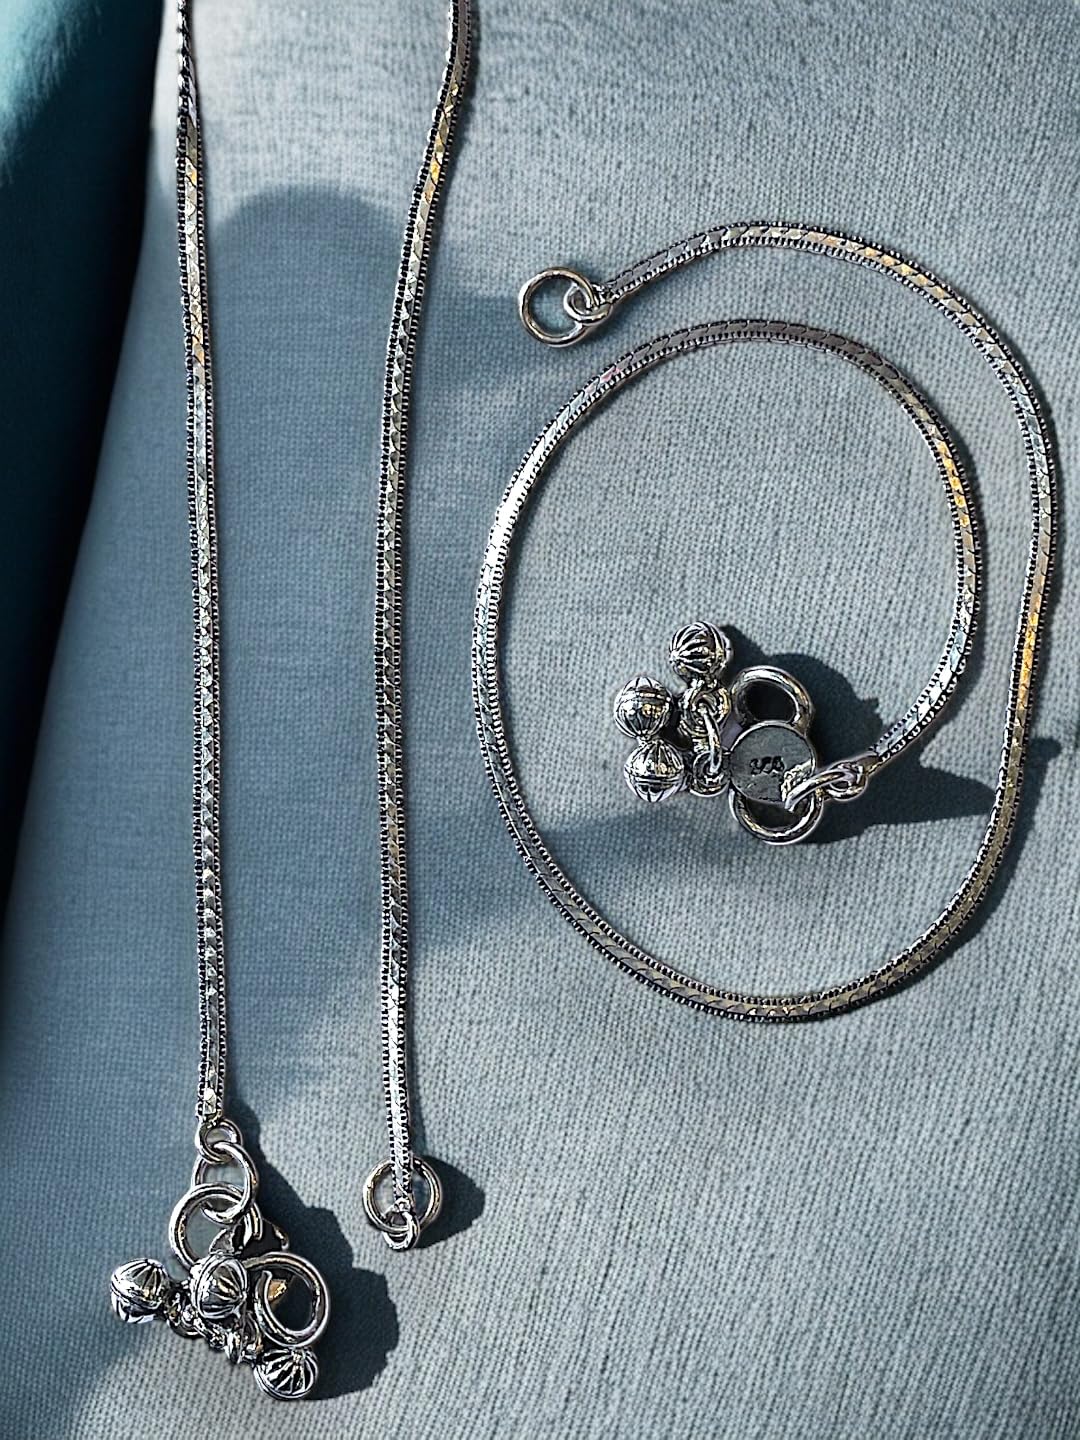 JEWELYAARIâ¢ 925 Silver Vintage charm anklets handmade chain anklet Payal crafted from sterling silver for Womens and Girls